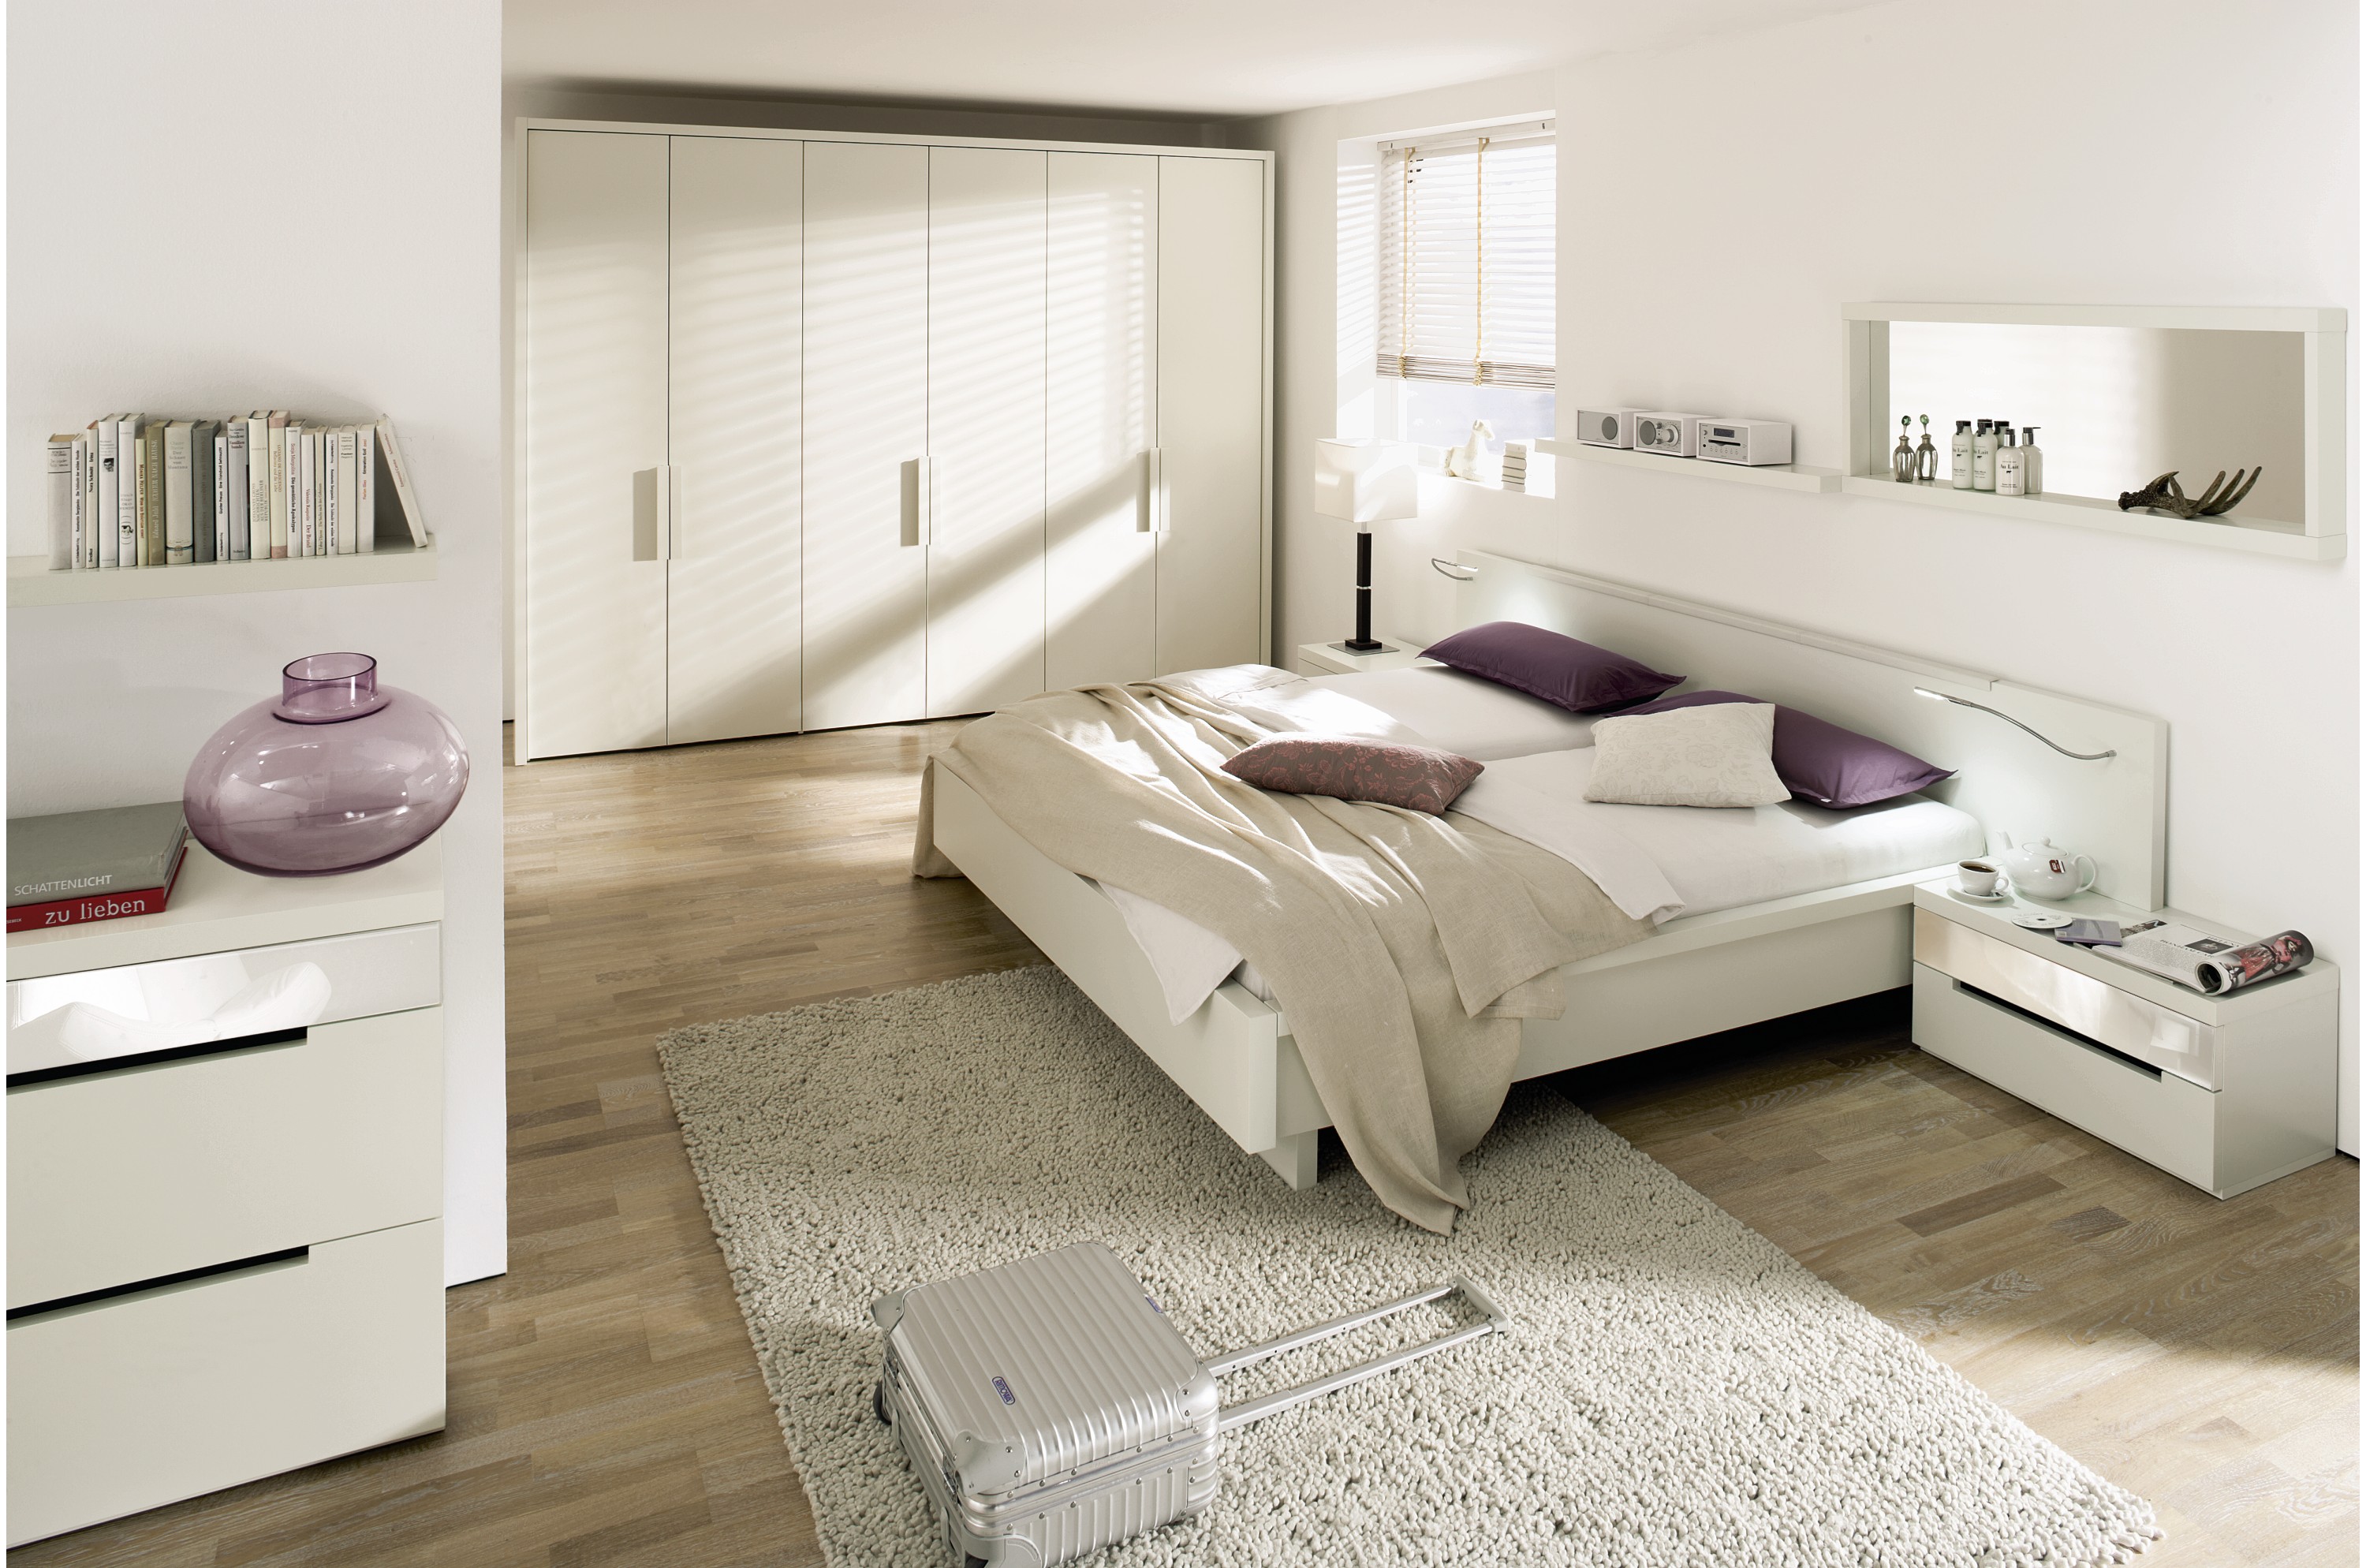 Спальня с белой кованной кроватью